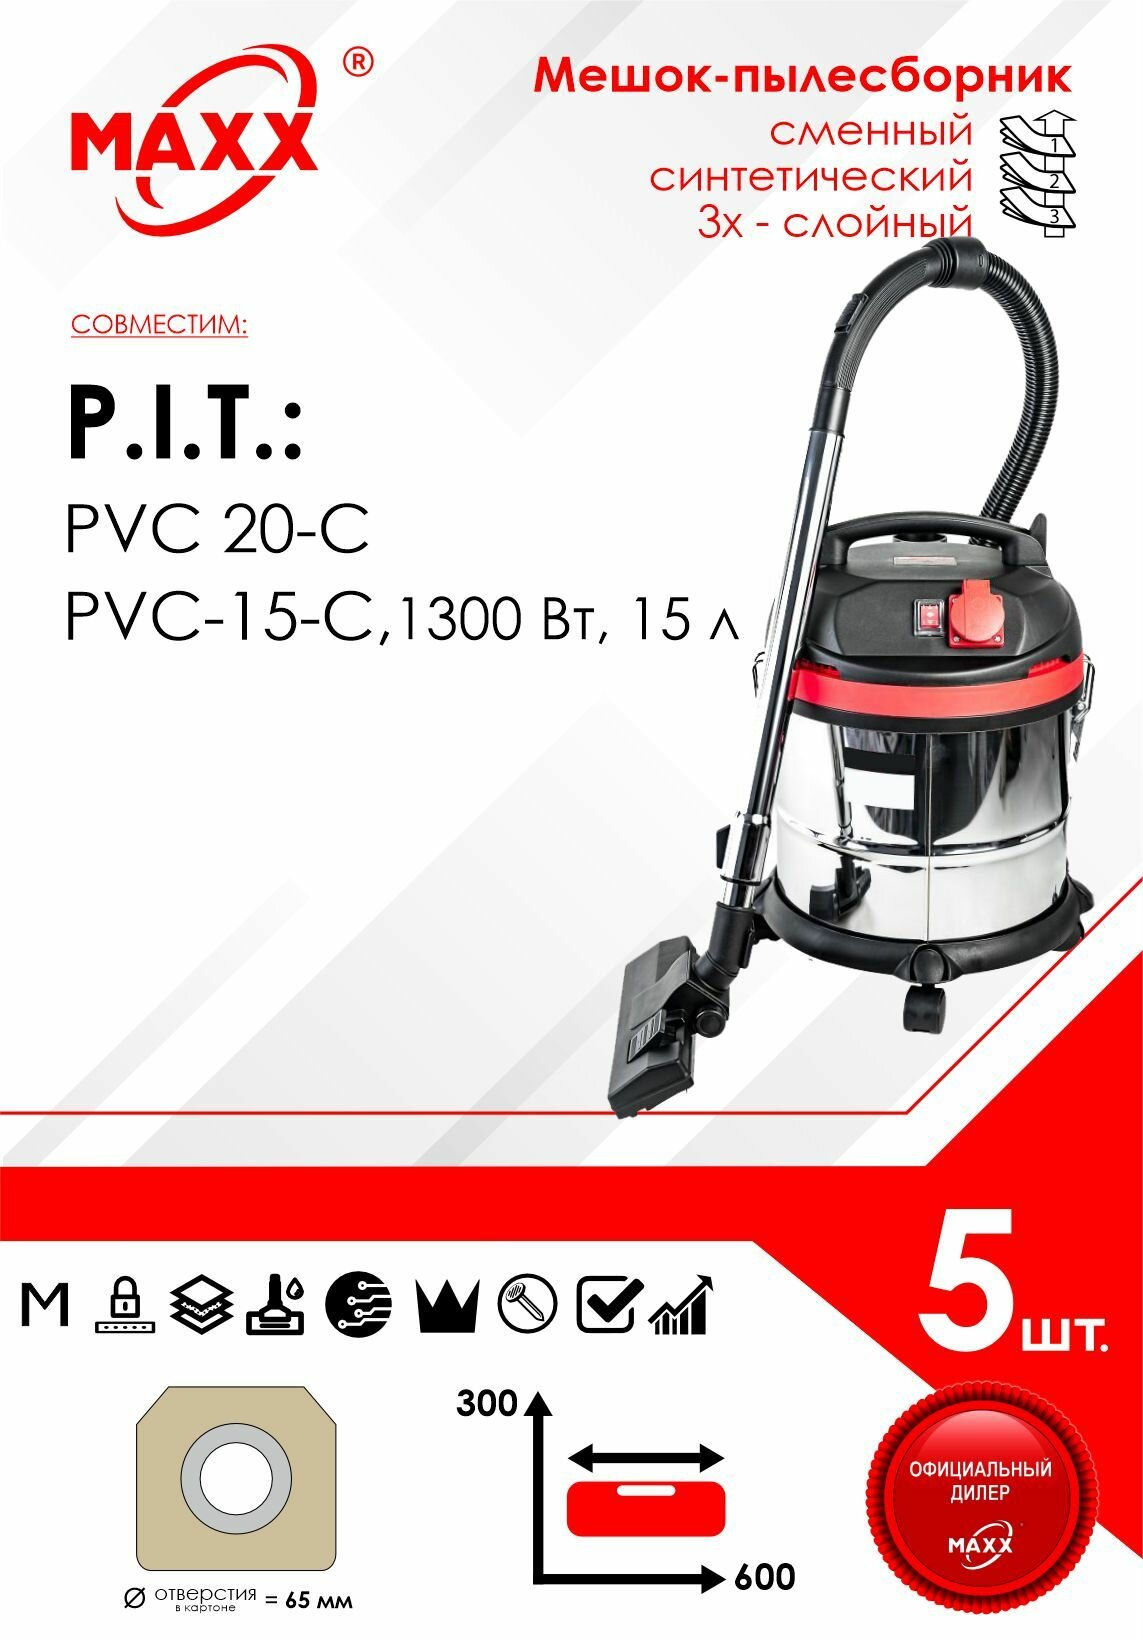 Мешок - пылесборник 5 шт. для пылесоса P.I.T. PVC 20 C, 15-C PVC20-C, EPPVC20-C/27, C/27м